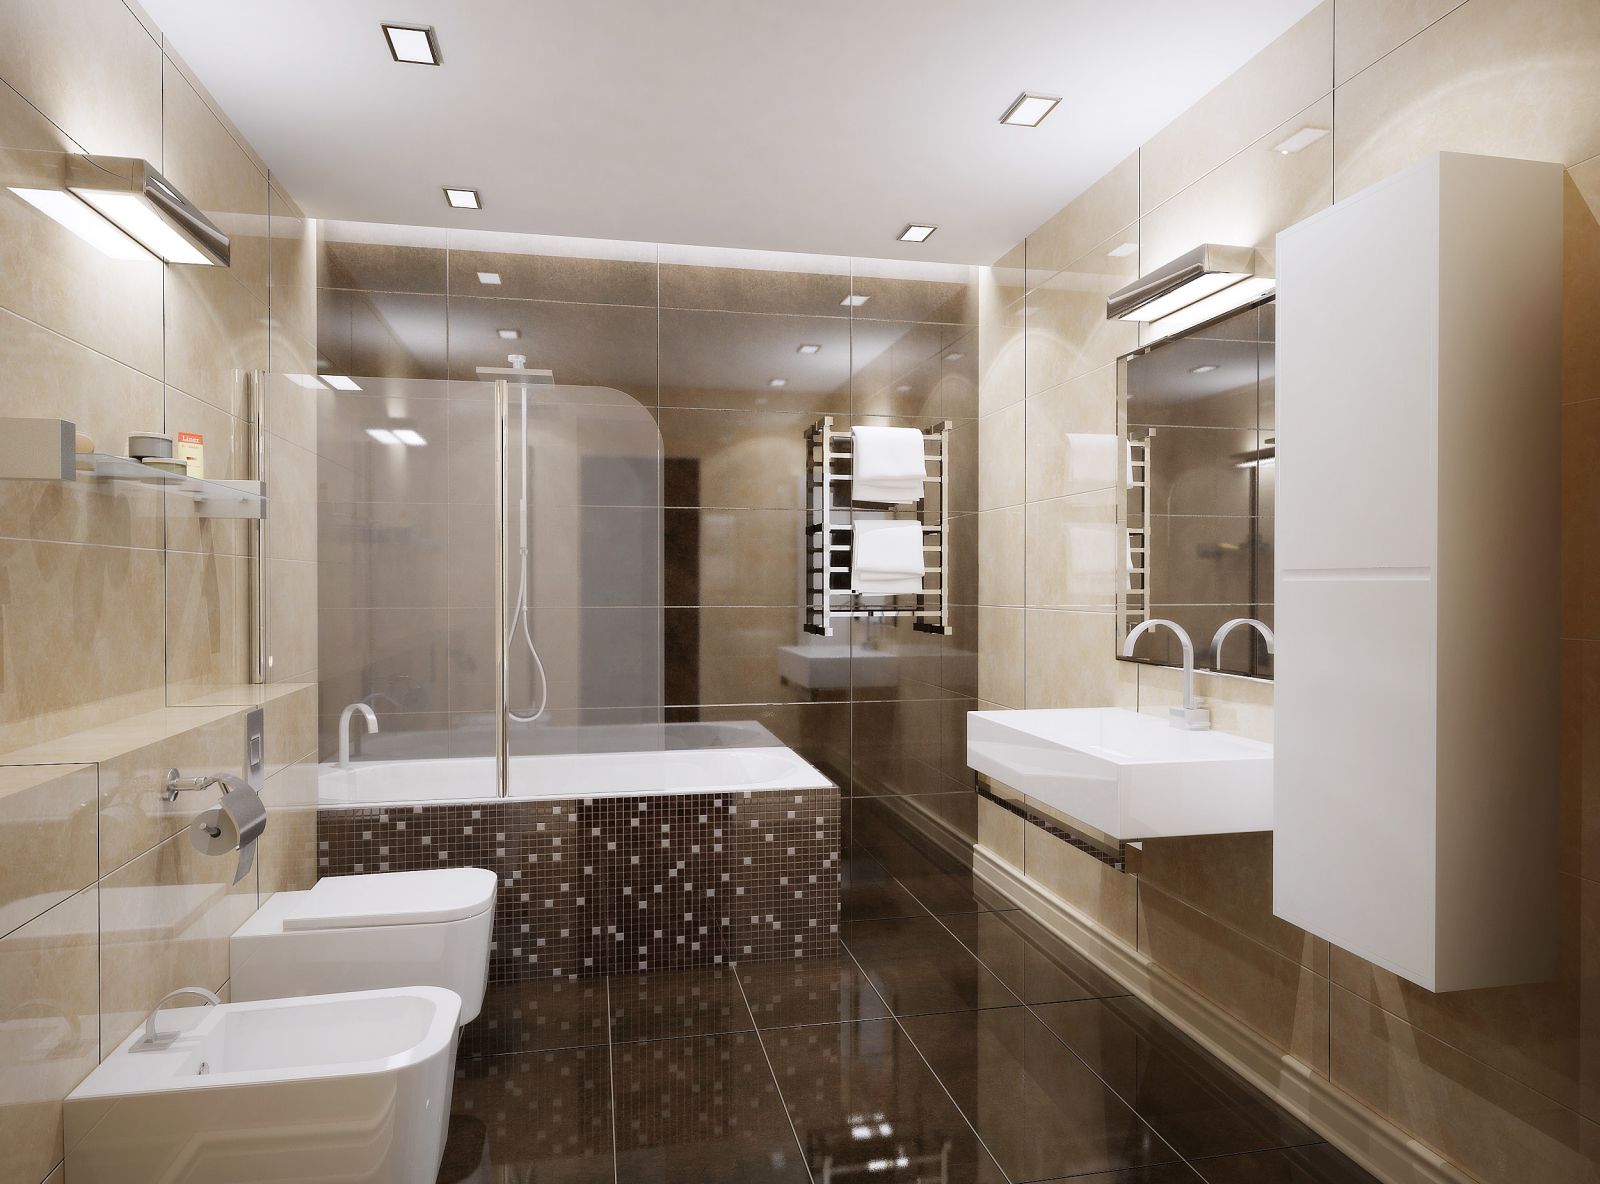 Красивая плитка в ванную комнату – как правильно выбрать? | Интерьерные .